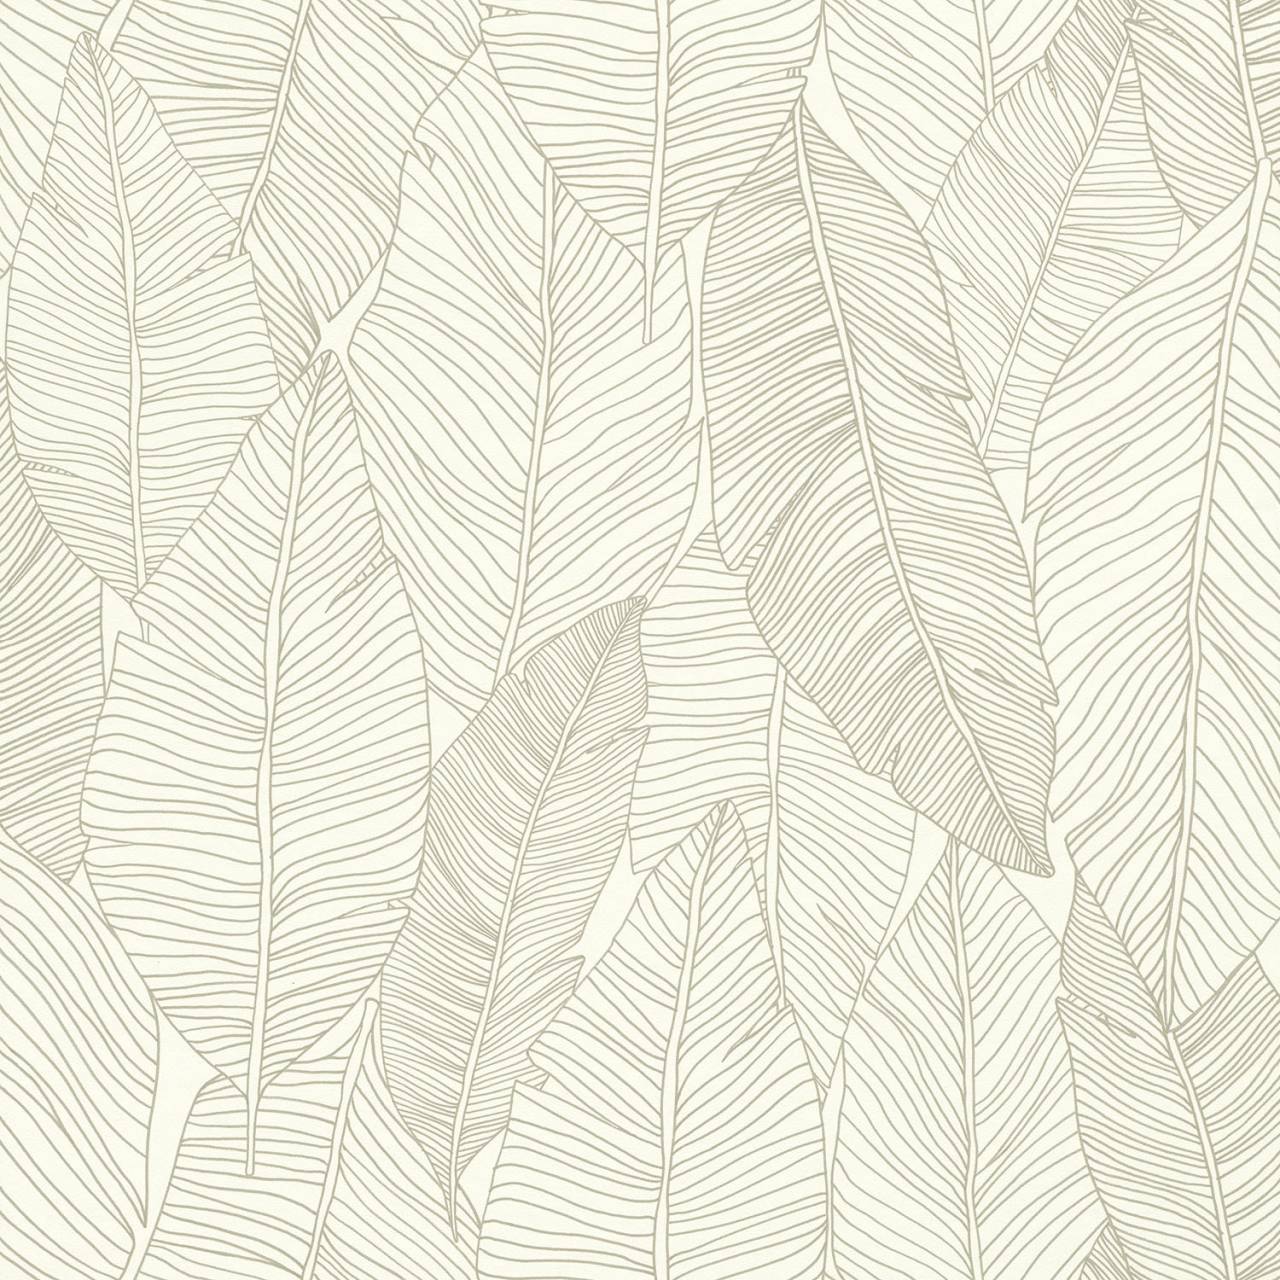 Rasch Textil Non-Woven Wallpaper - Jungle Fever 139009 / 13900-9